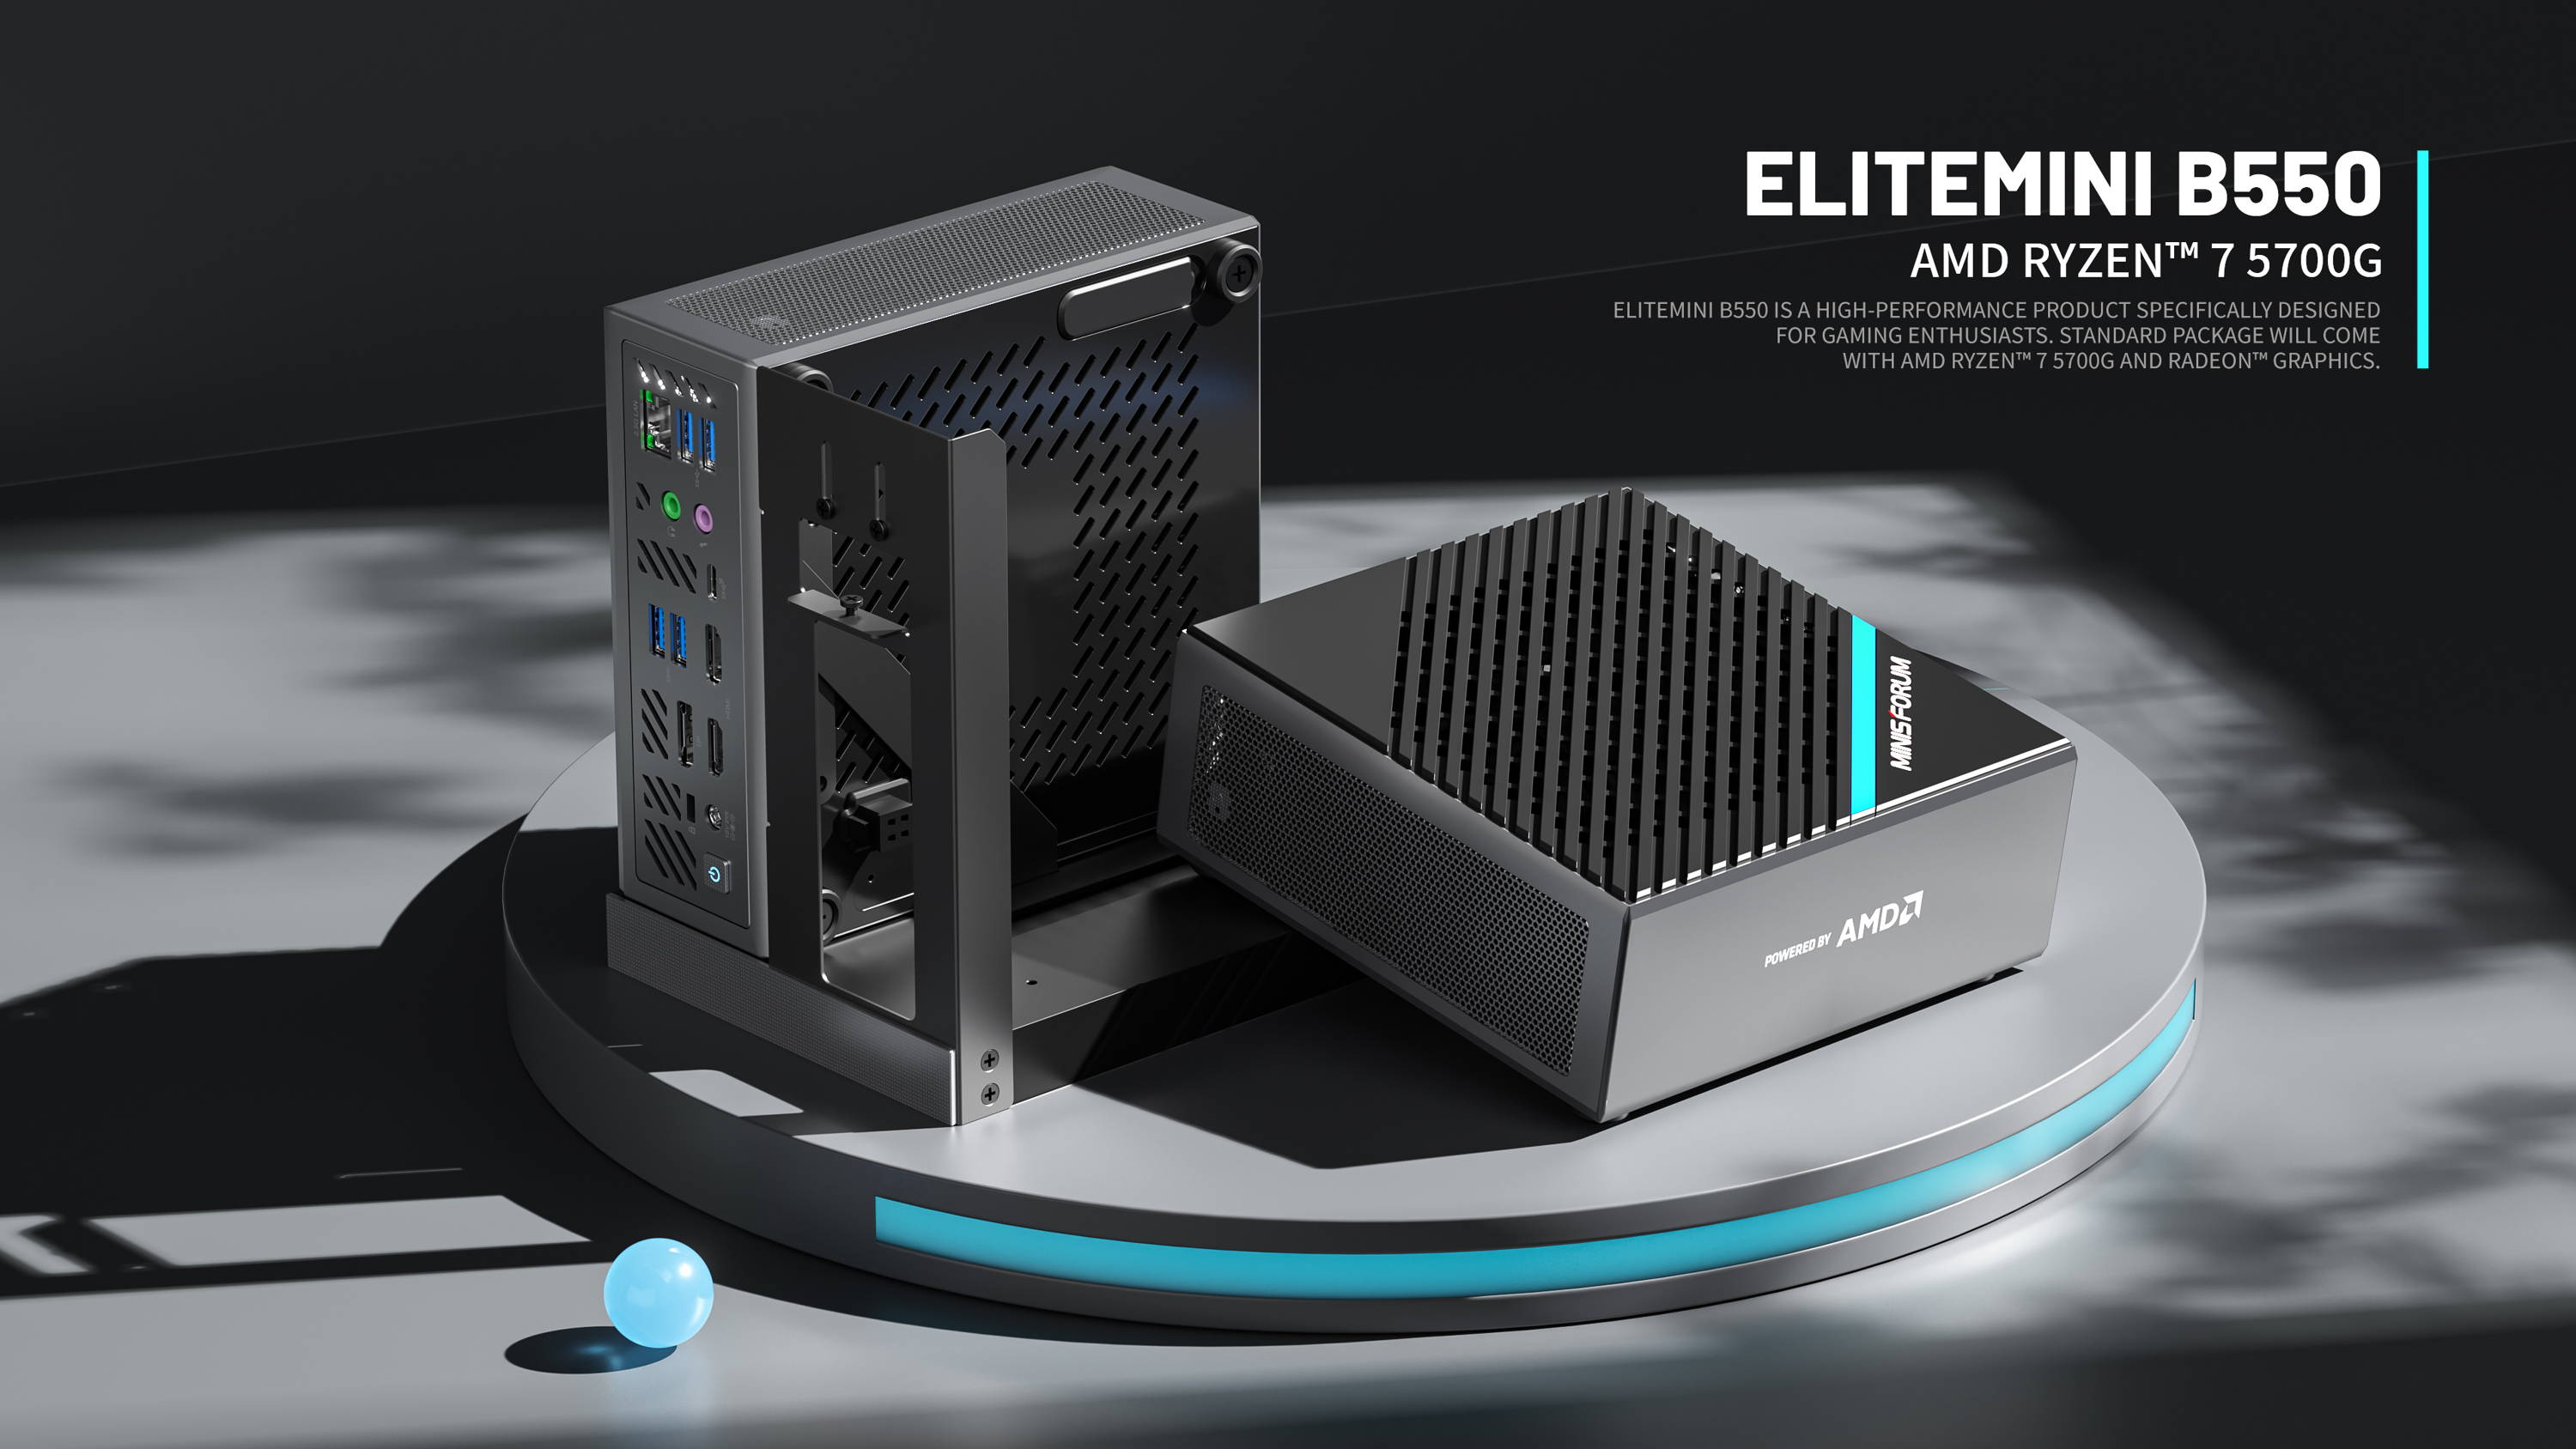 Minisforum Elitemini B550 AMD Ryzen™ 7 5700G / AMD Ryzen™ 7 4700G 